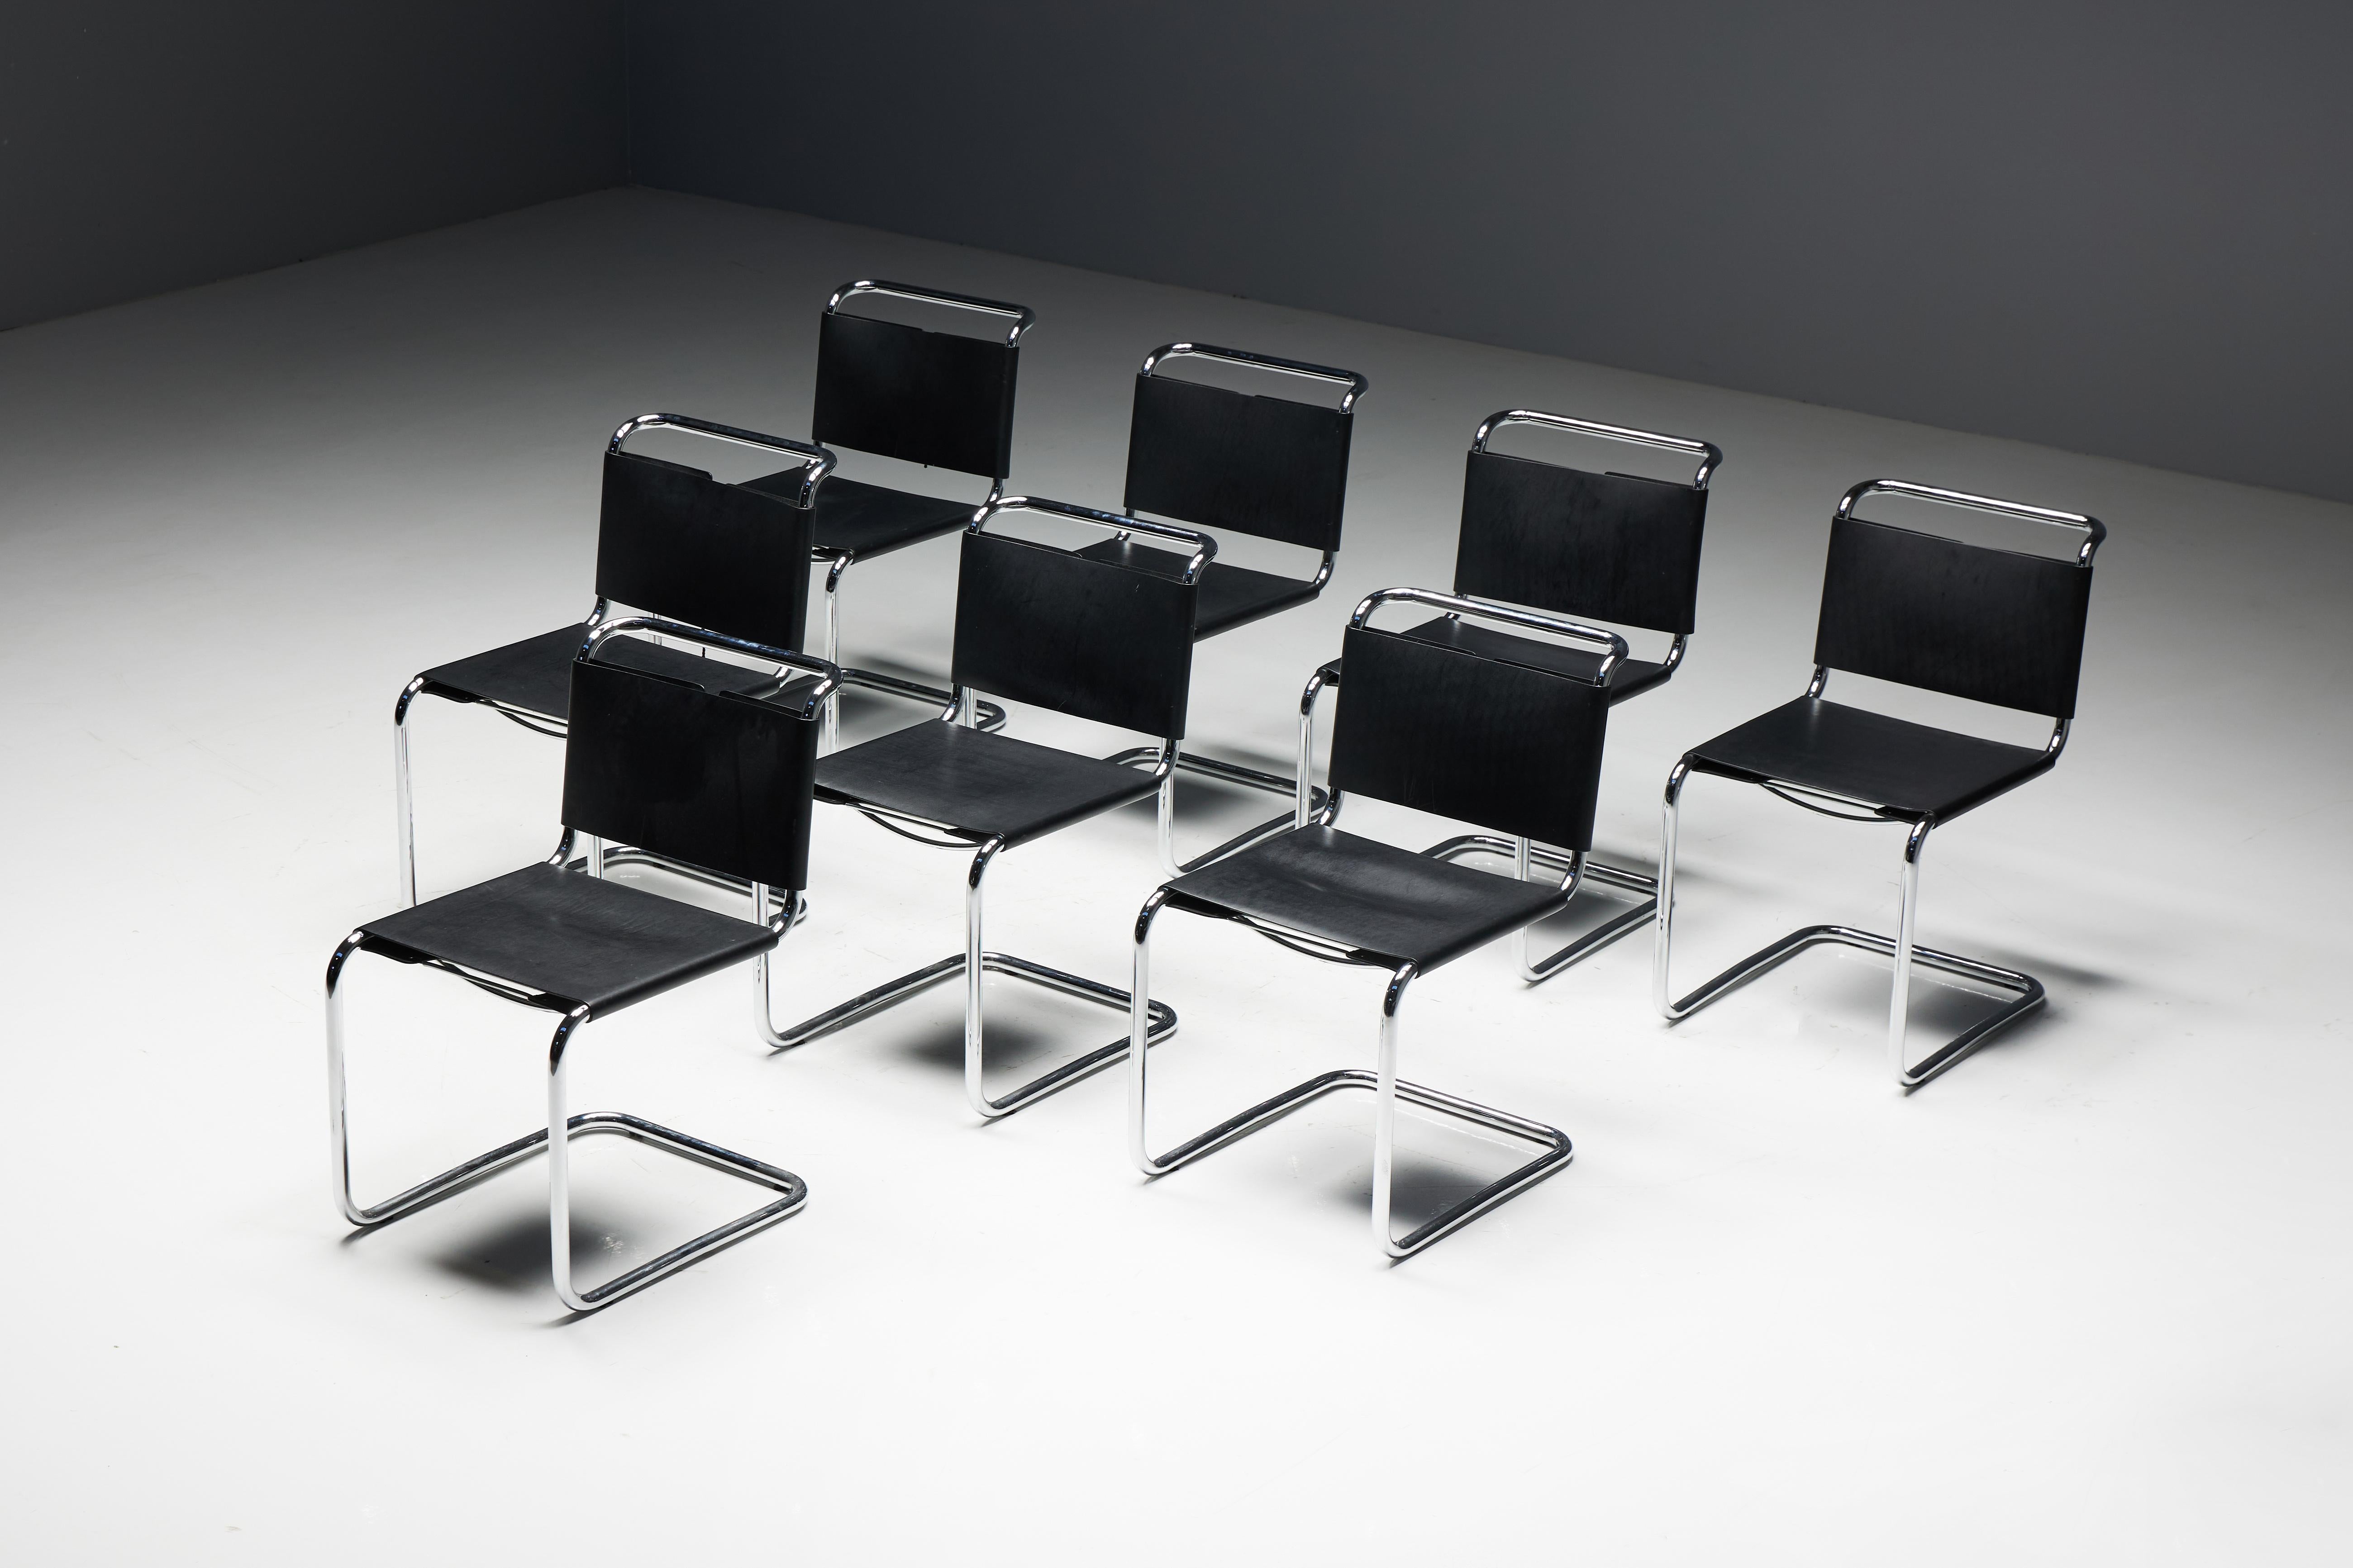 Spoleto Chair von Ufficio Tecnico für Knoll, ein zeitloses Stück modernen Designs. Diese Stühle sind mit schwarzen Ledersitzen ausgestattet, die mit polierten Chromrahmen verbunden sind. Die geschnürten Rückenlehnen bieten nicht nur Komfort und